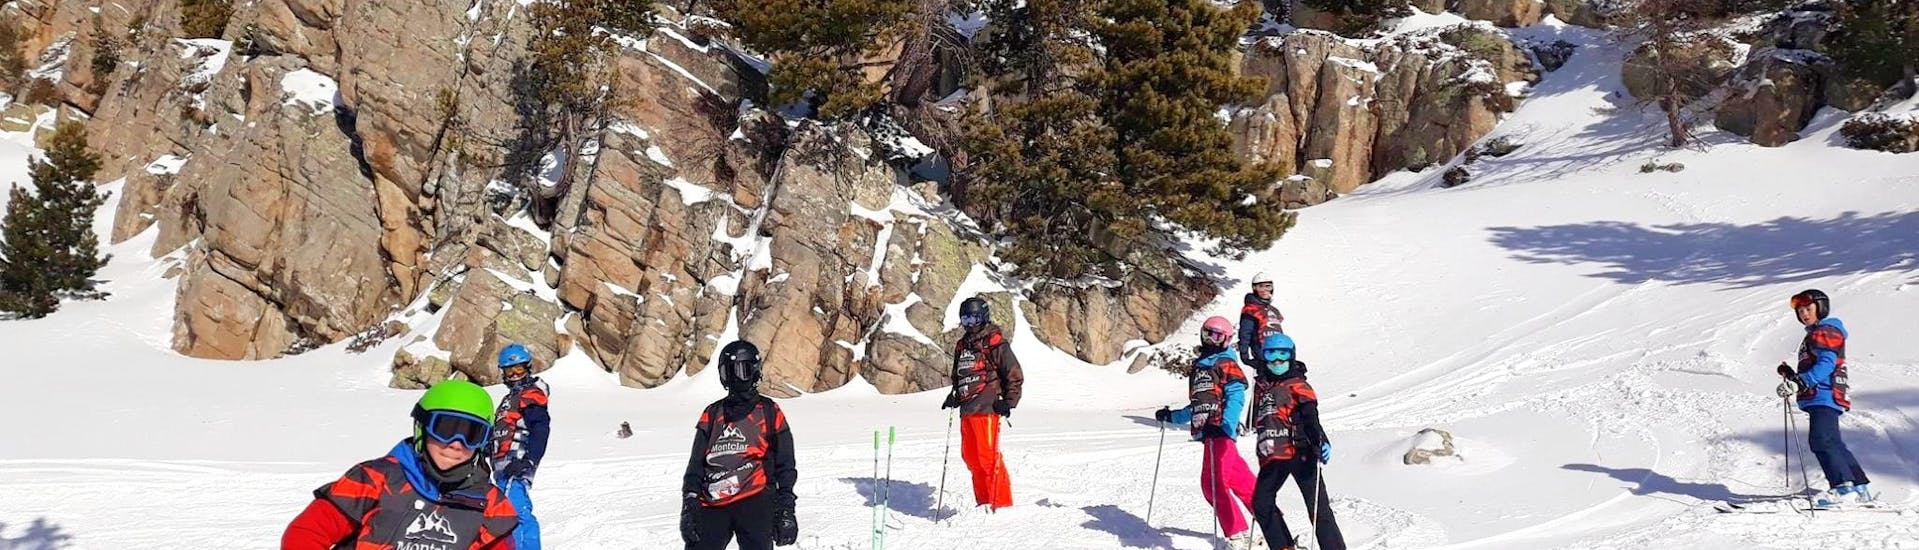 Des enfants passent un excellent moment sur les pistes pendant leur Cours de ski Enfants (5-12 ans) pour Tous niveaux avec l'école de ski ESF Montclar.